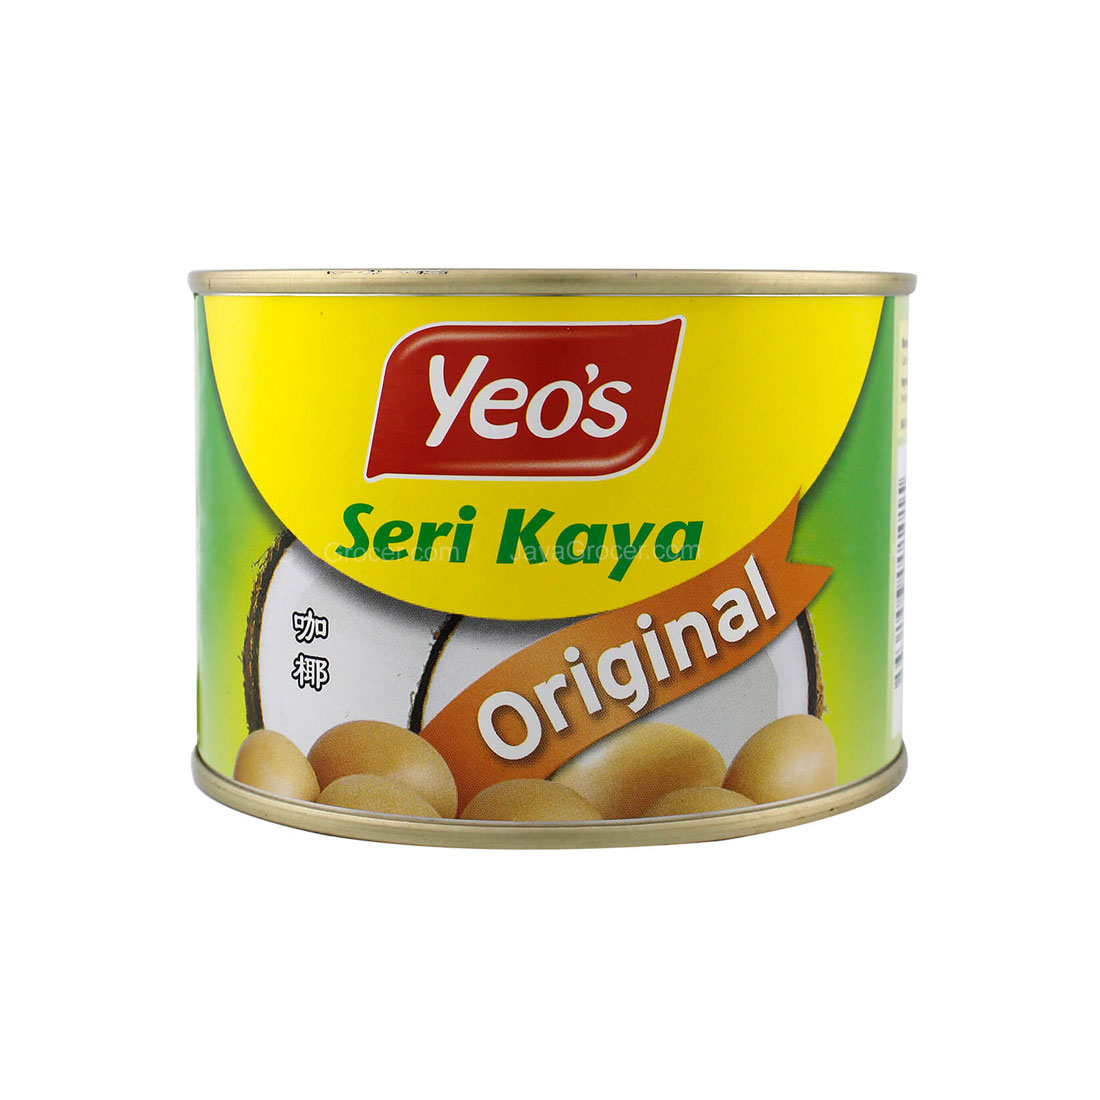 สังขยาไข่มะพร้าว Yeo's Seri Kaya  Kaya Asli (Original) มี2ขนาดให้เลือก